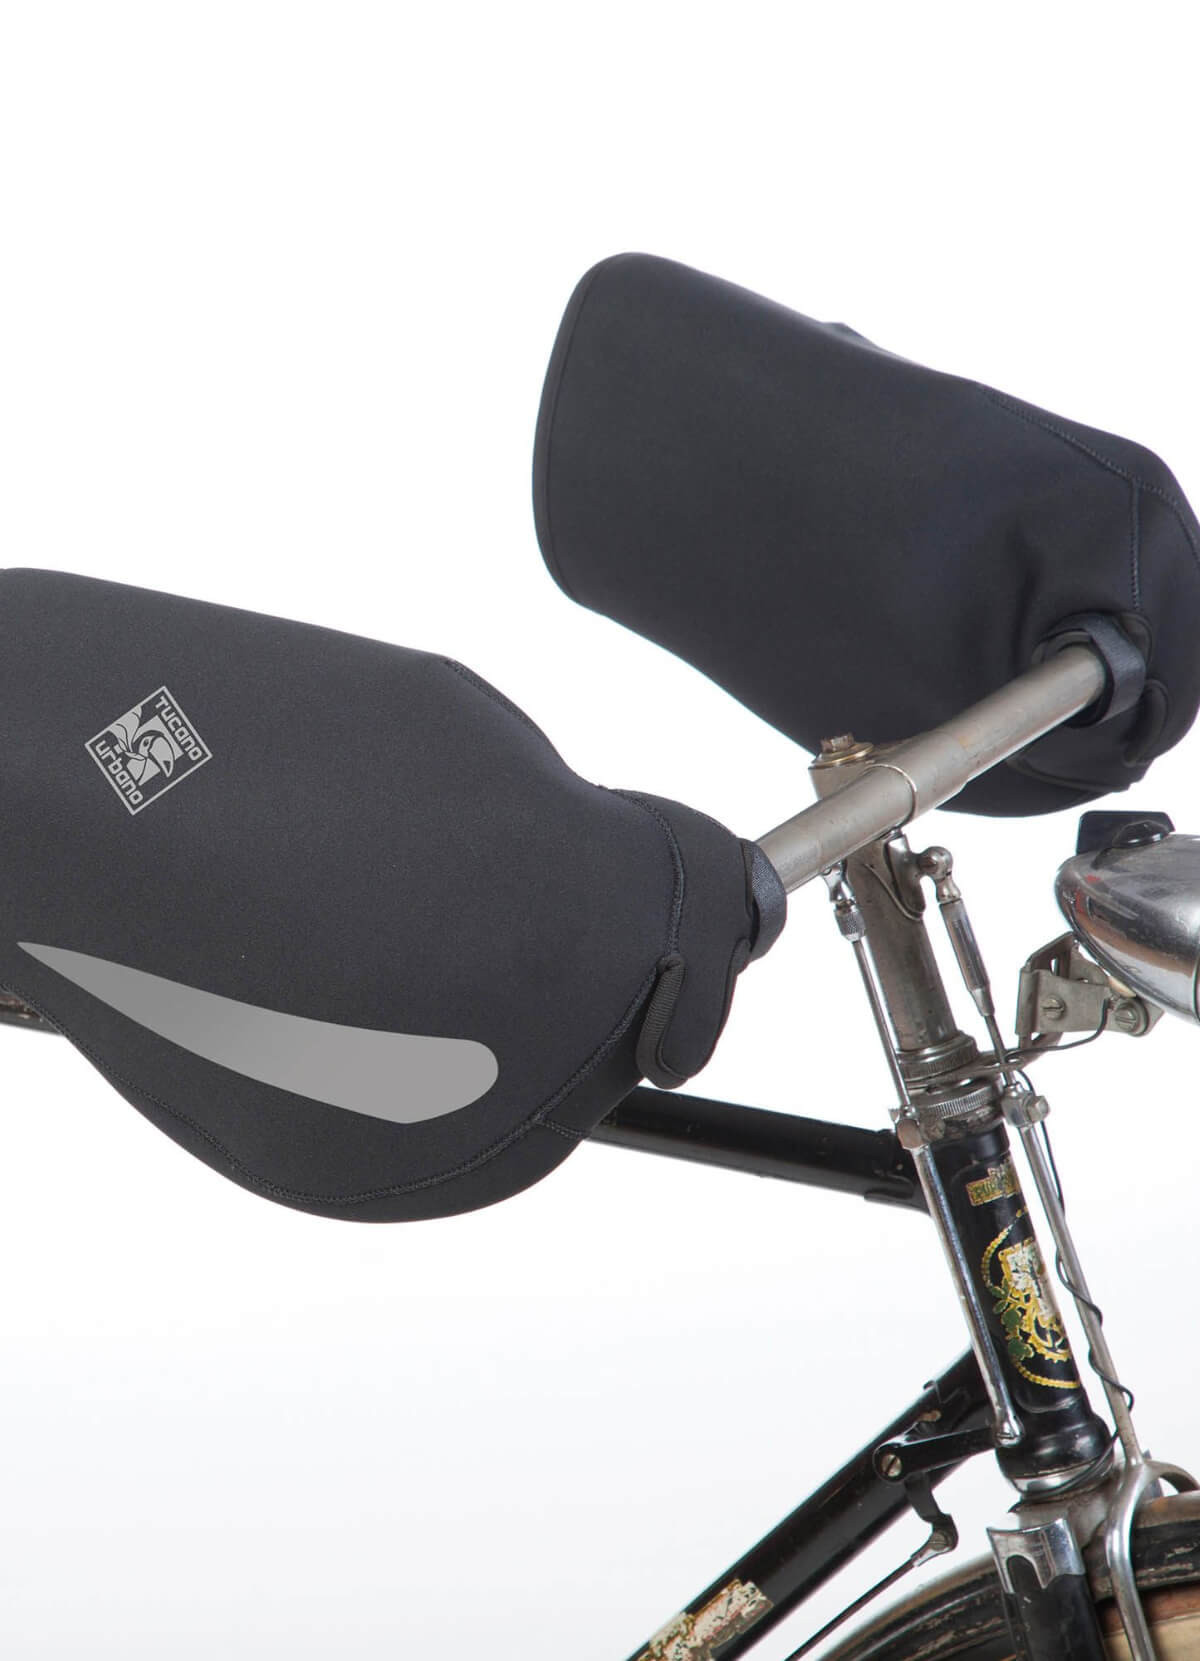 Manchons à vélo protège-mains doublés polaire – BLACKBIRDS PASTEL – LAPADD